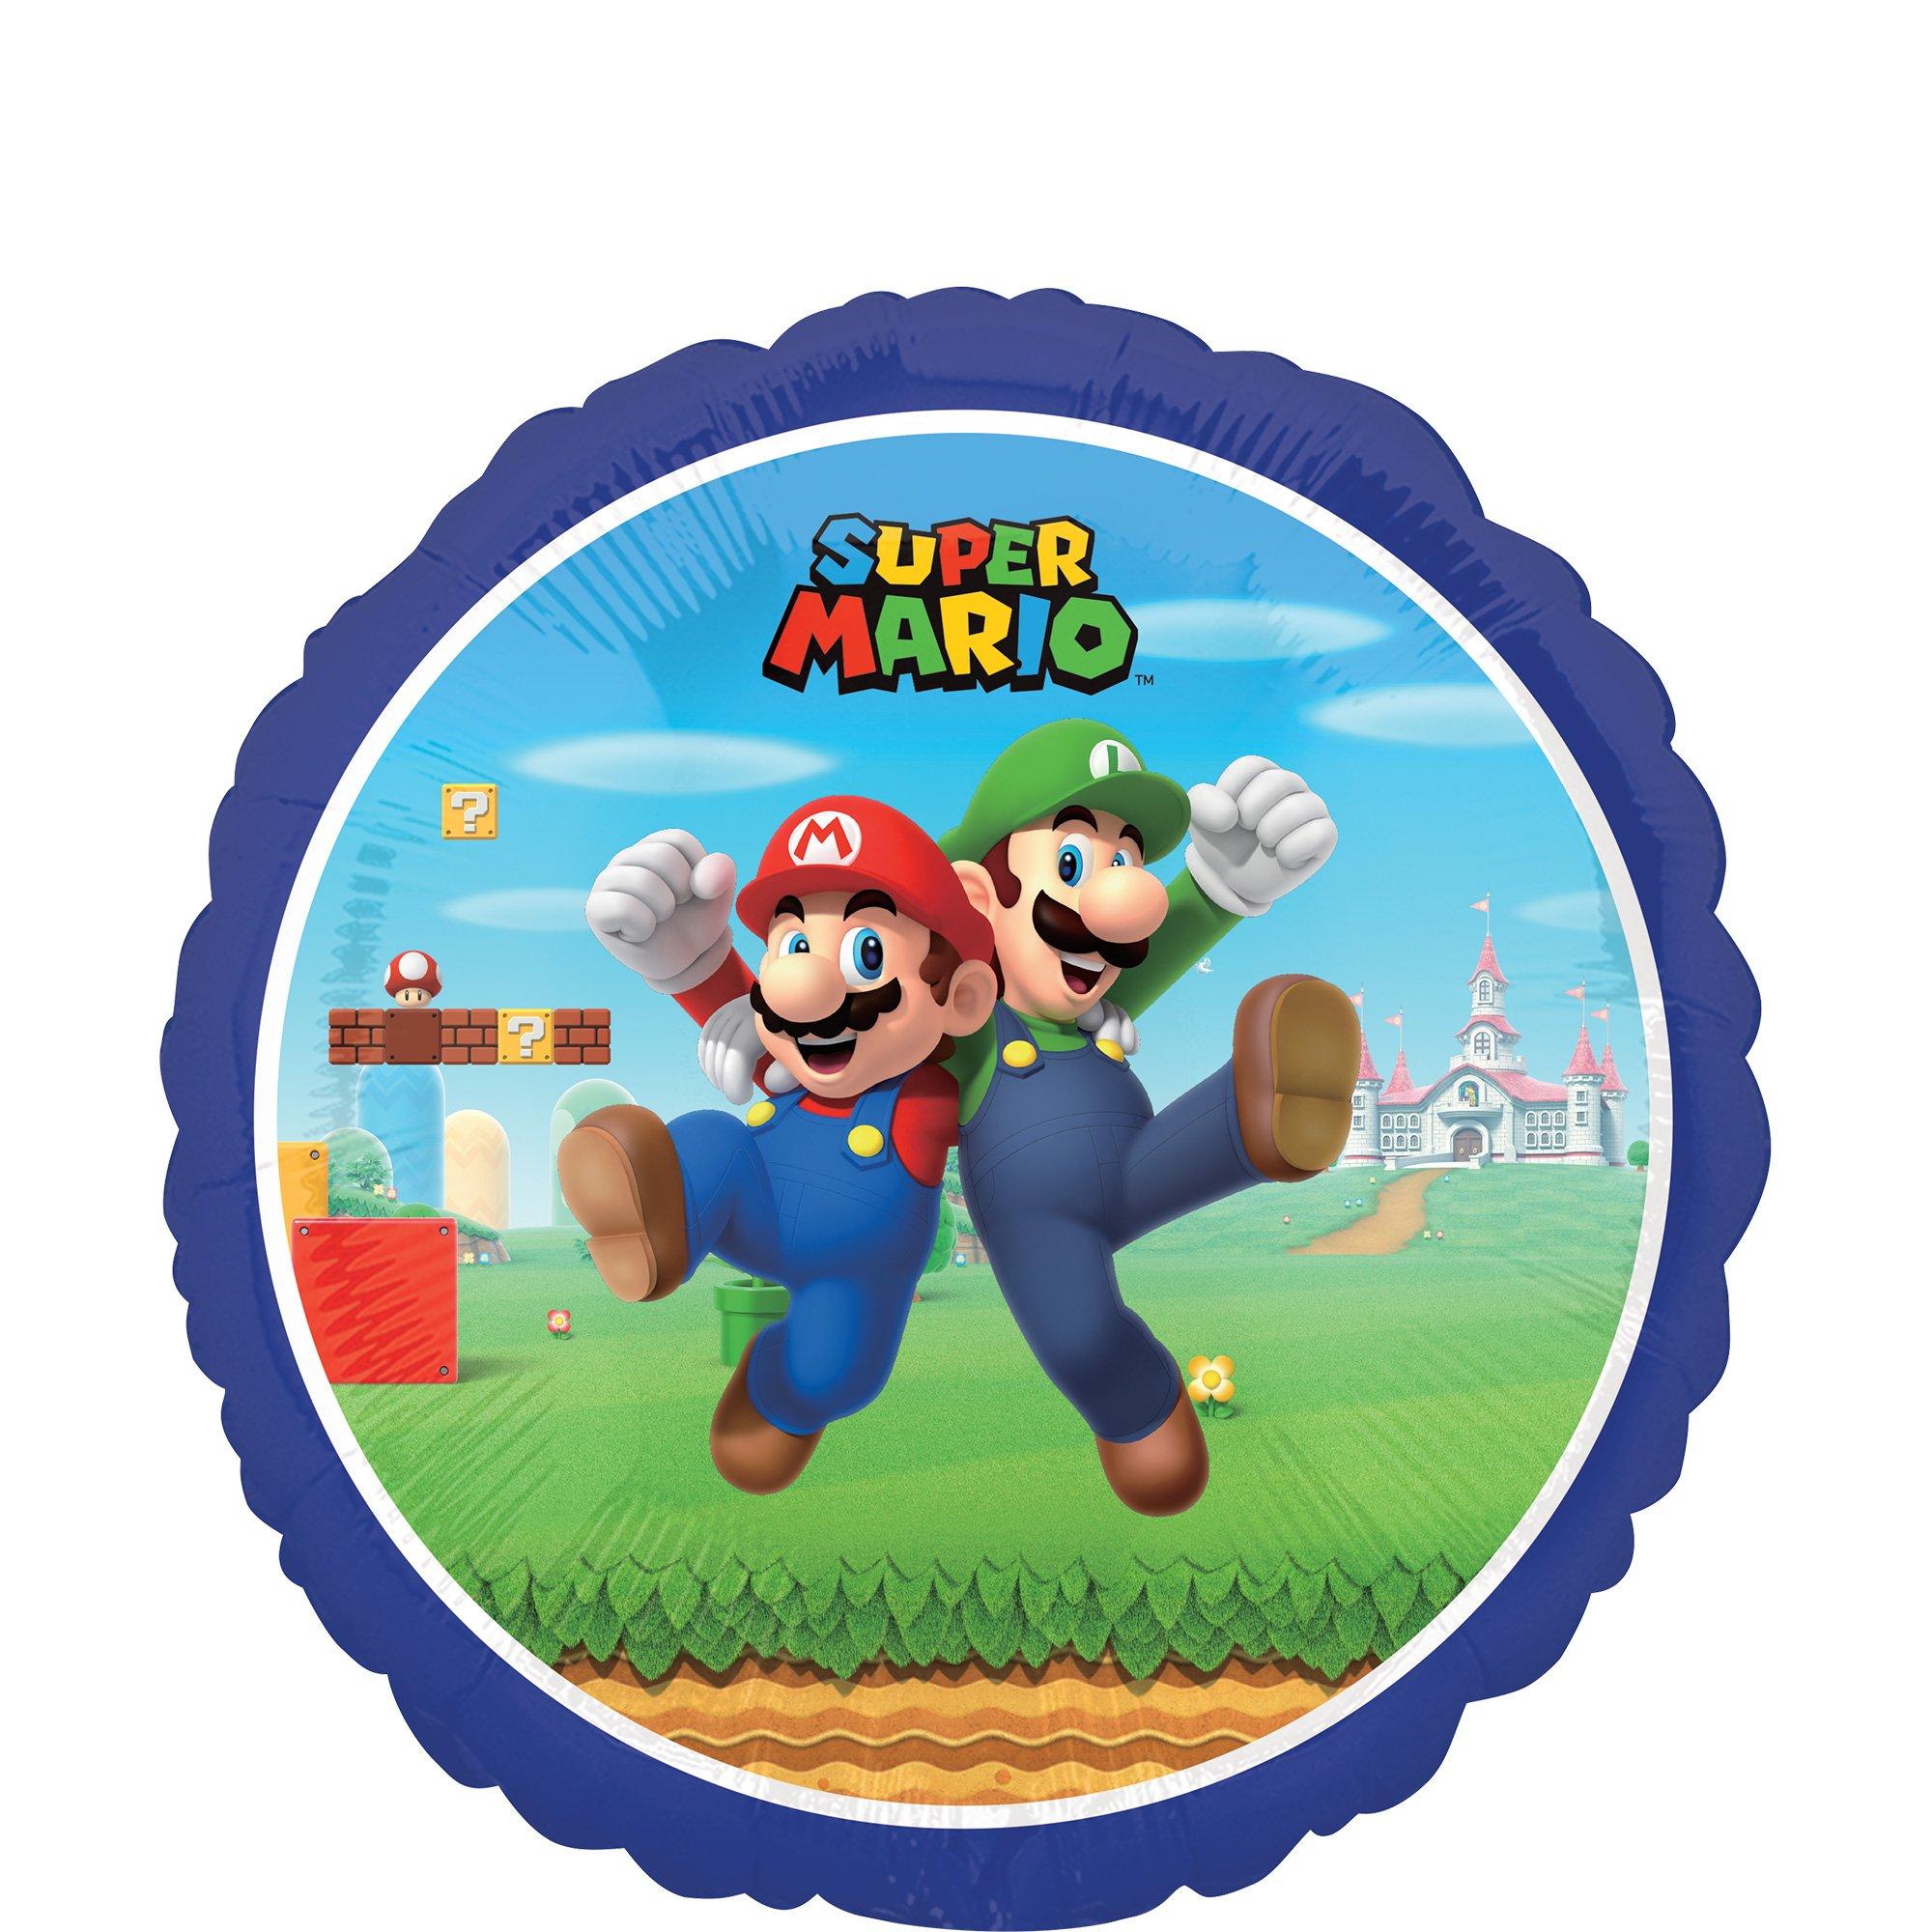 Mario & Luigi Foil Balloon, 18in - Super Mario Bros